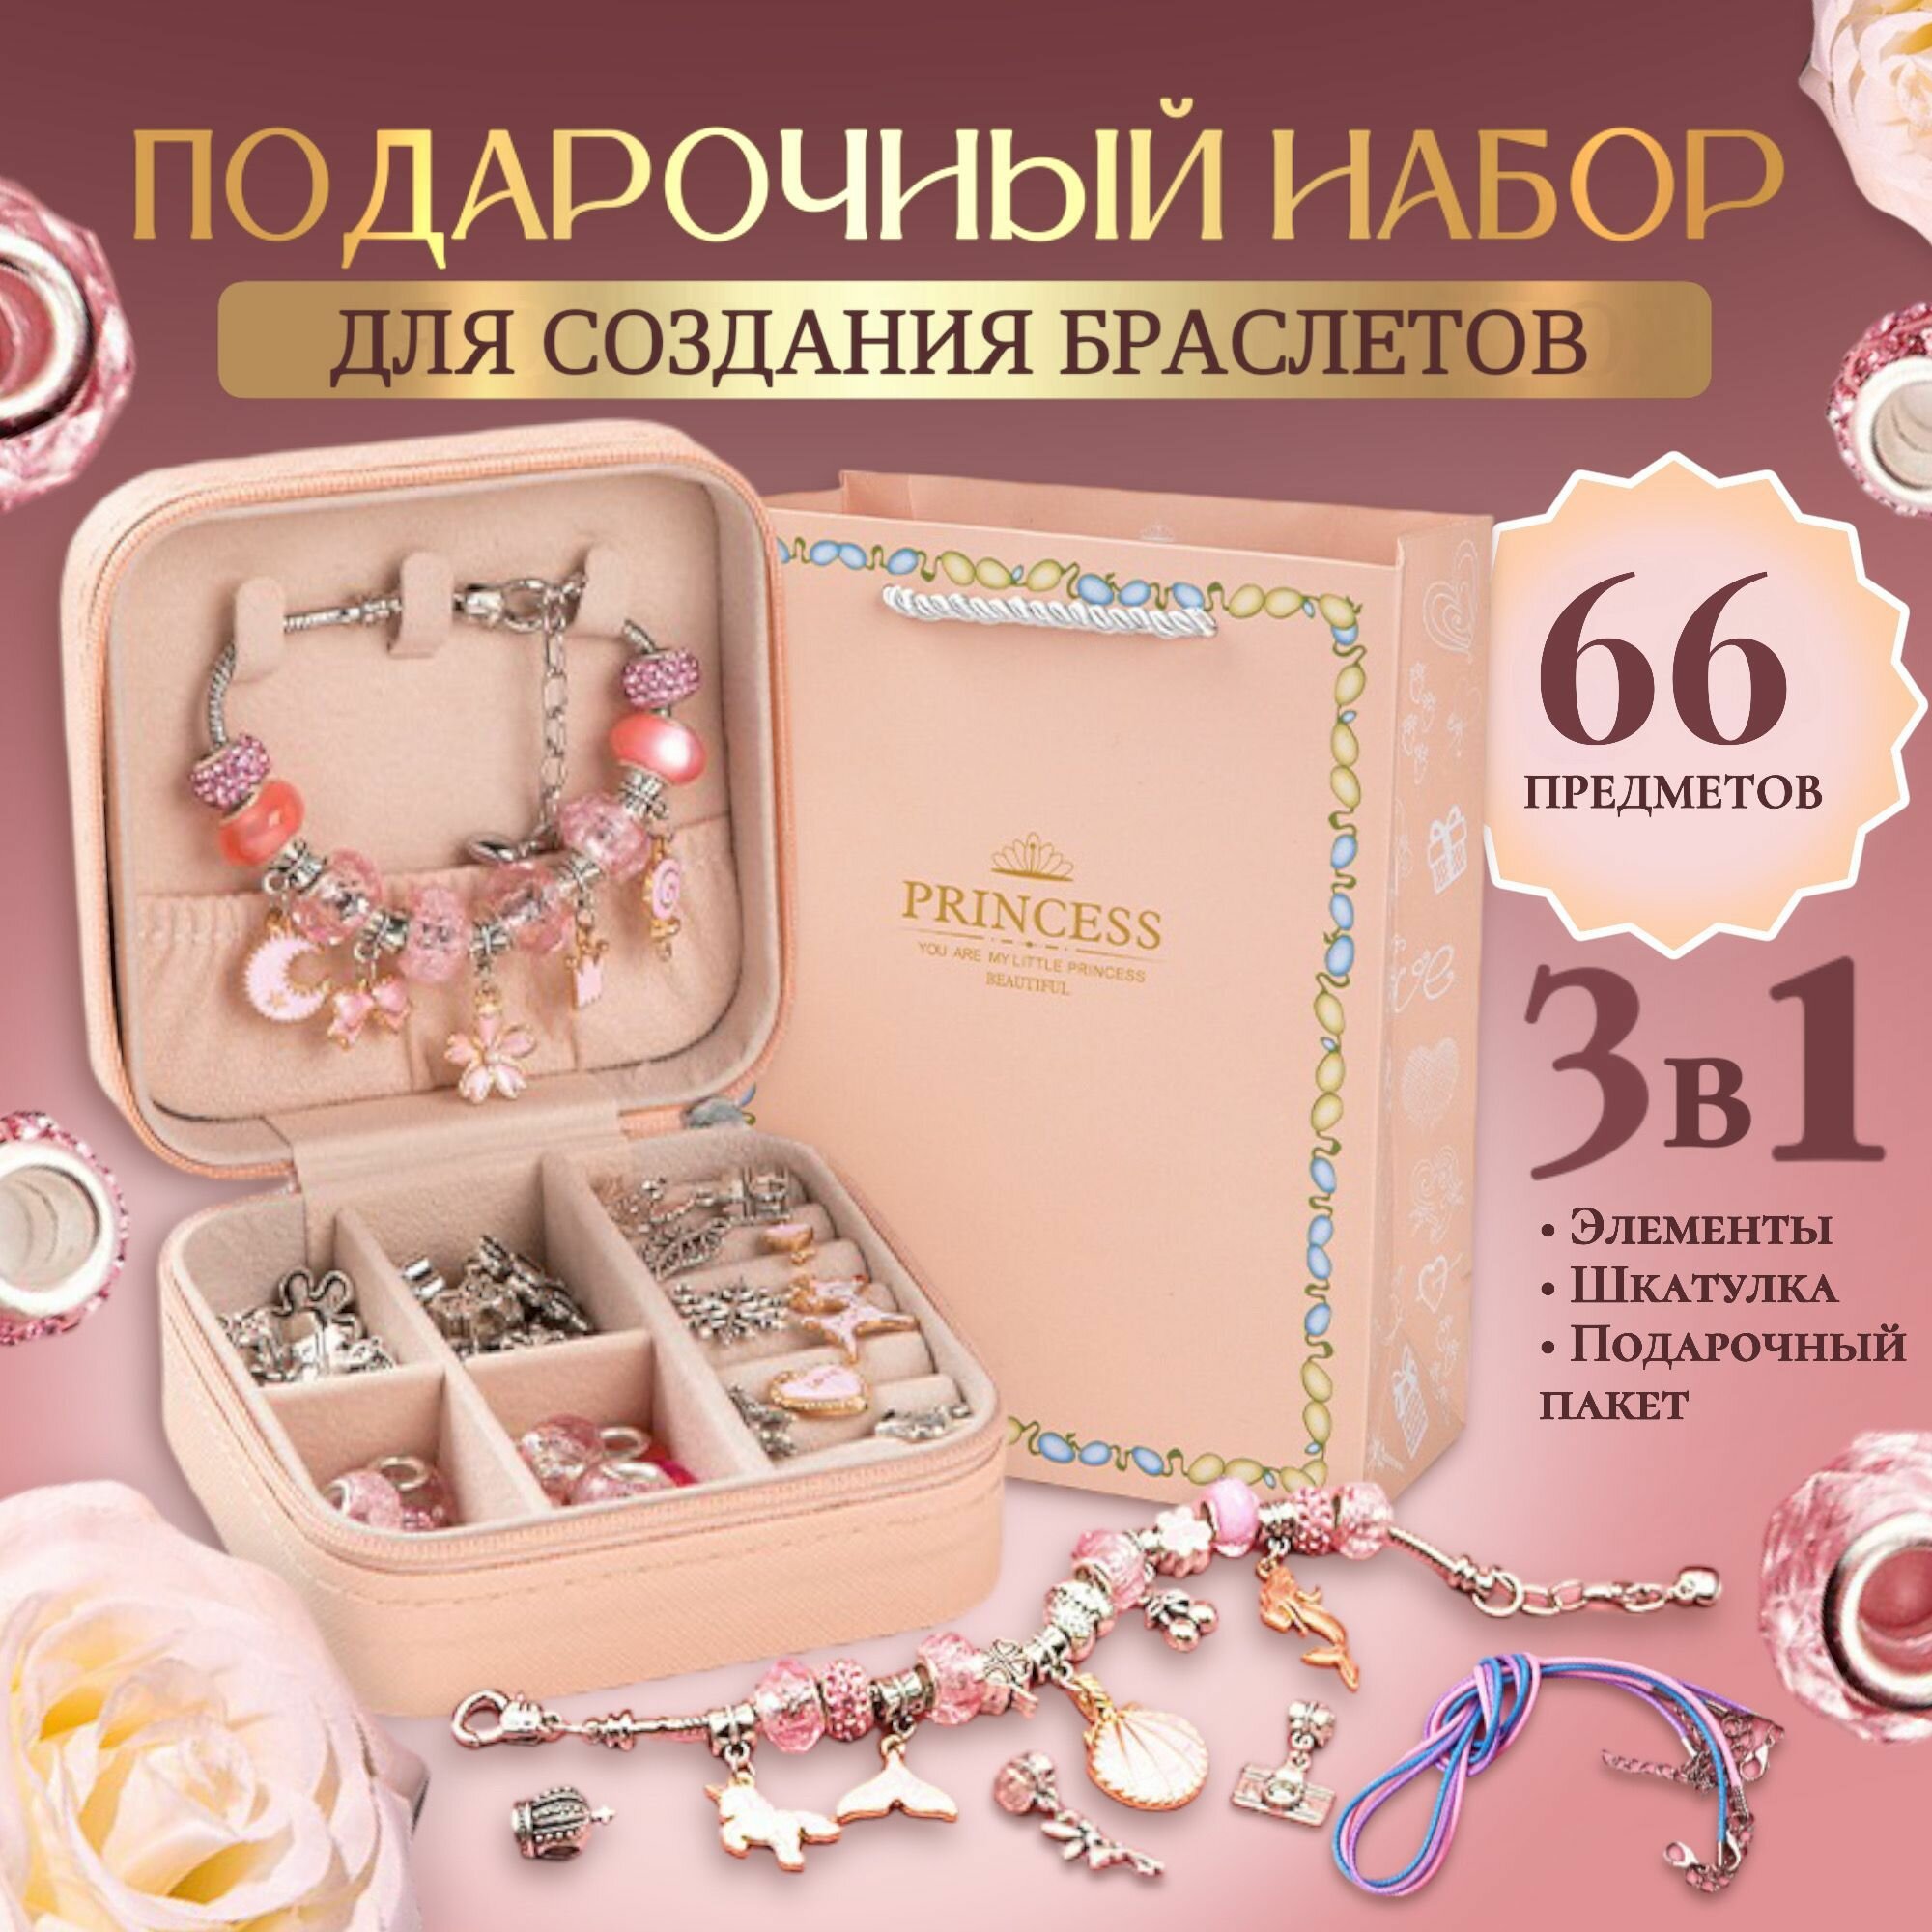 Набор для создания оригинальных украшений с подарочным пакетом Шармы браслеты подарок для девочки